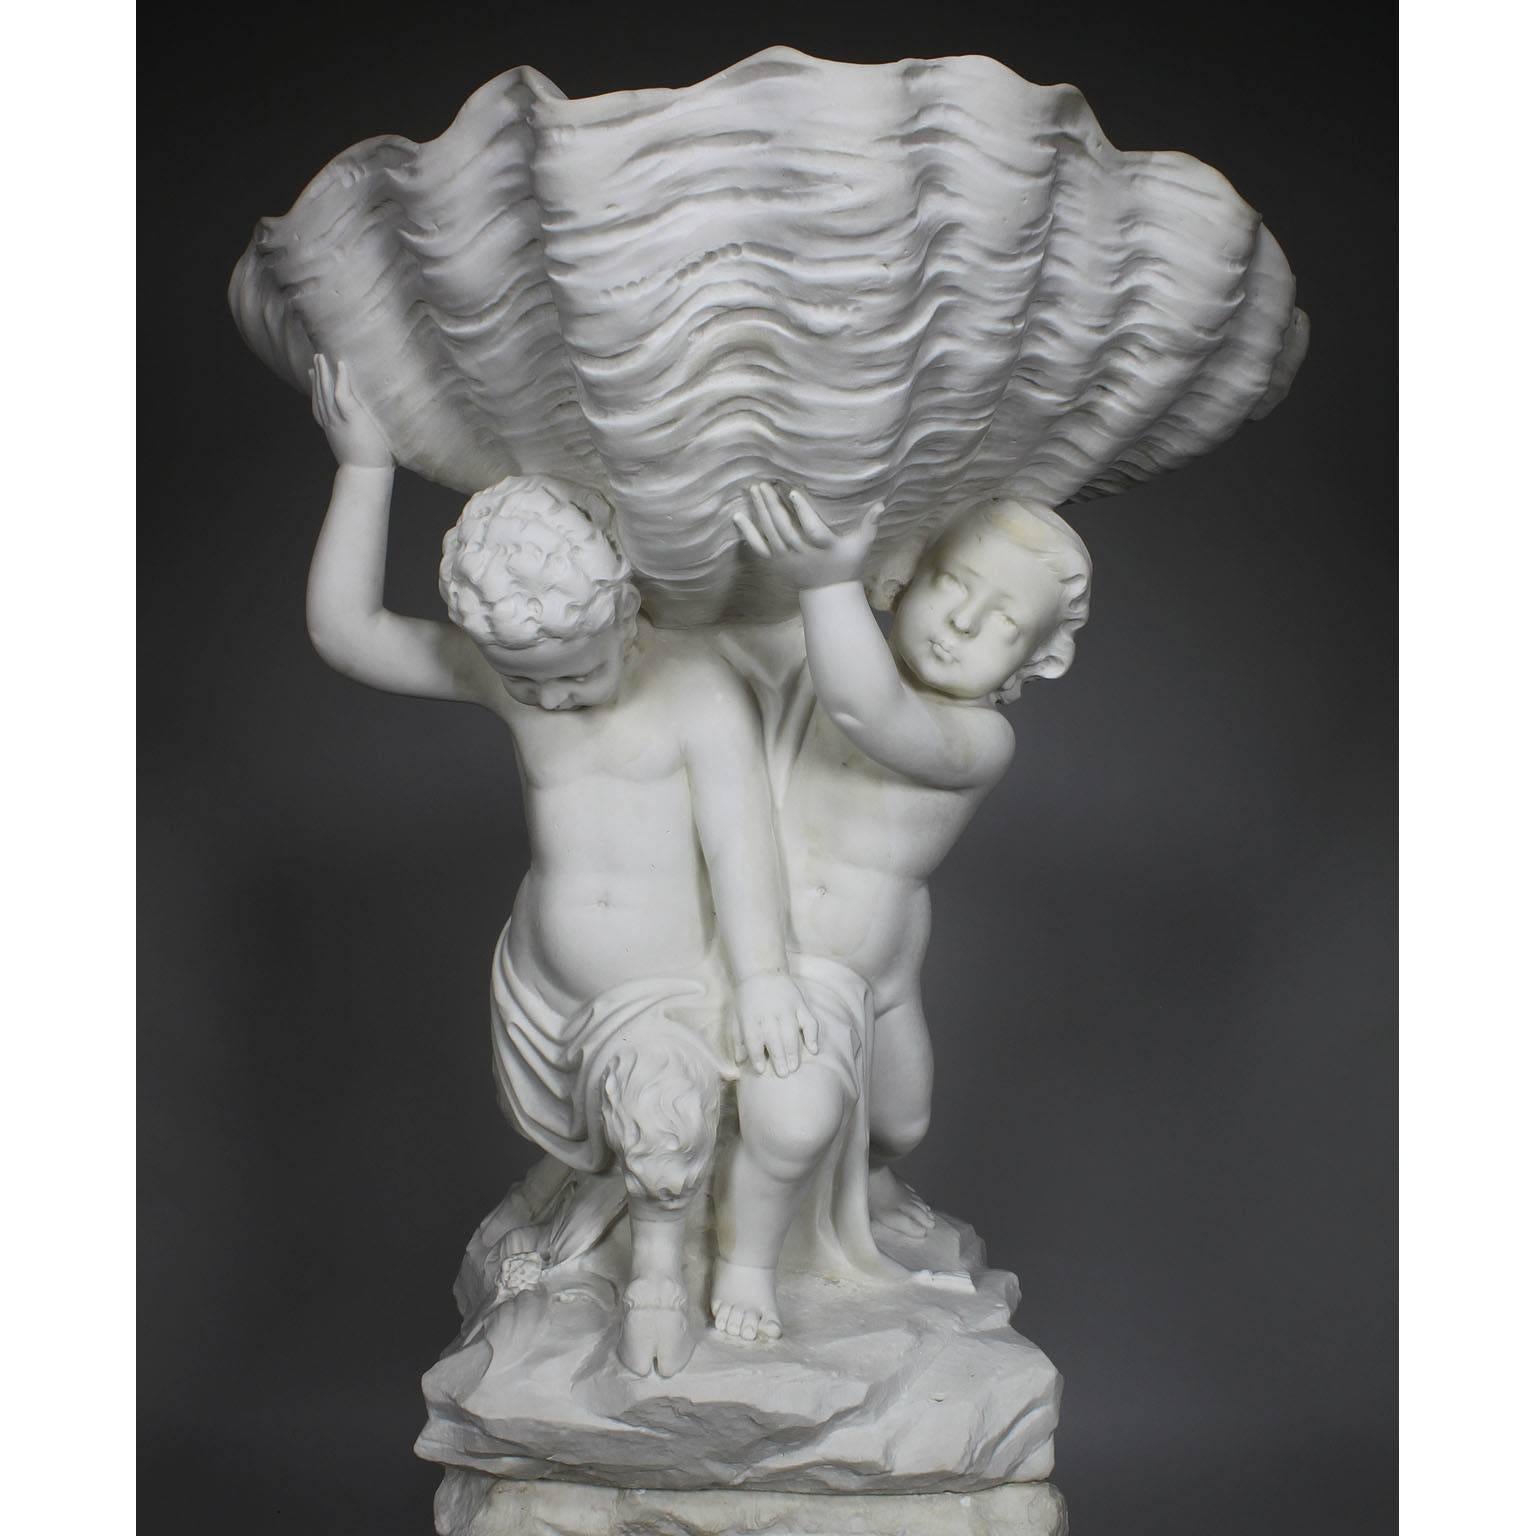 Très belle fontaine italienne du XIXe siècle en marbre de Carrare sculpté, représentant un Putto debout et un Satyre soutenant un coquillage, sur une base en rocaille (percée pour l'eau). Attribué à Giovanni Battista Lombardi (italien, 1823-1880).